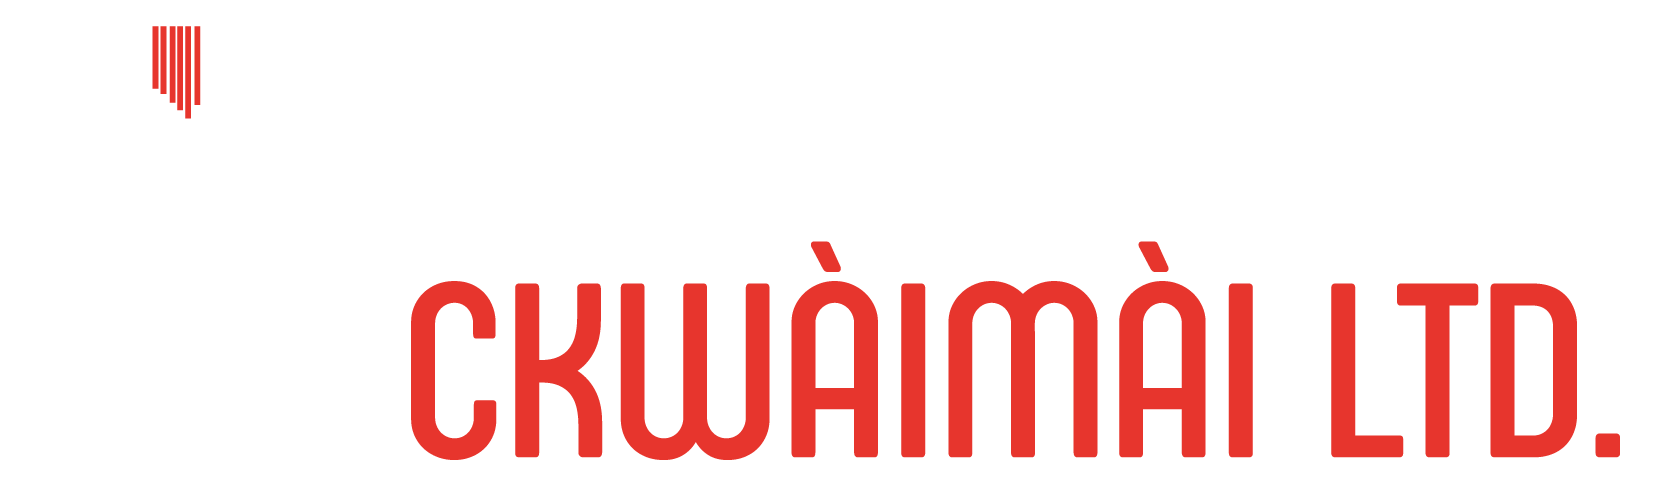 WAIMAI-redraw-white-sticky